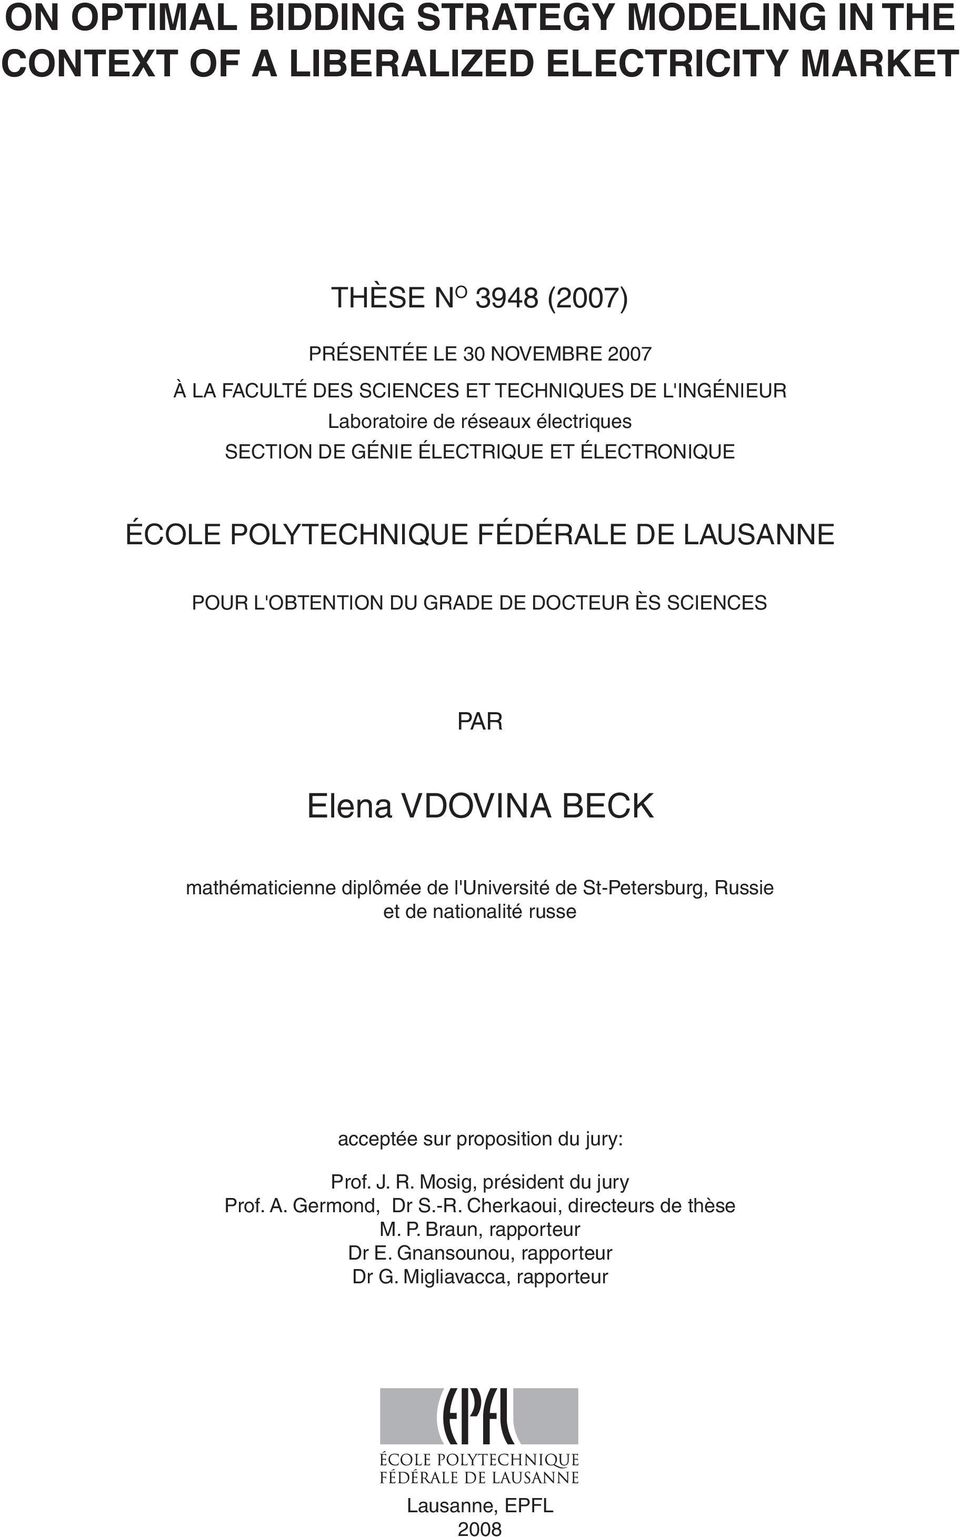 DOCTEUR ÈS SCIENCES PAR Elena Vdovina Beck mathématicienne diplômée de l'université de St-Petersburg, Russie et de nationalité russe acceptée sur proposition du jury: Prof. J.